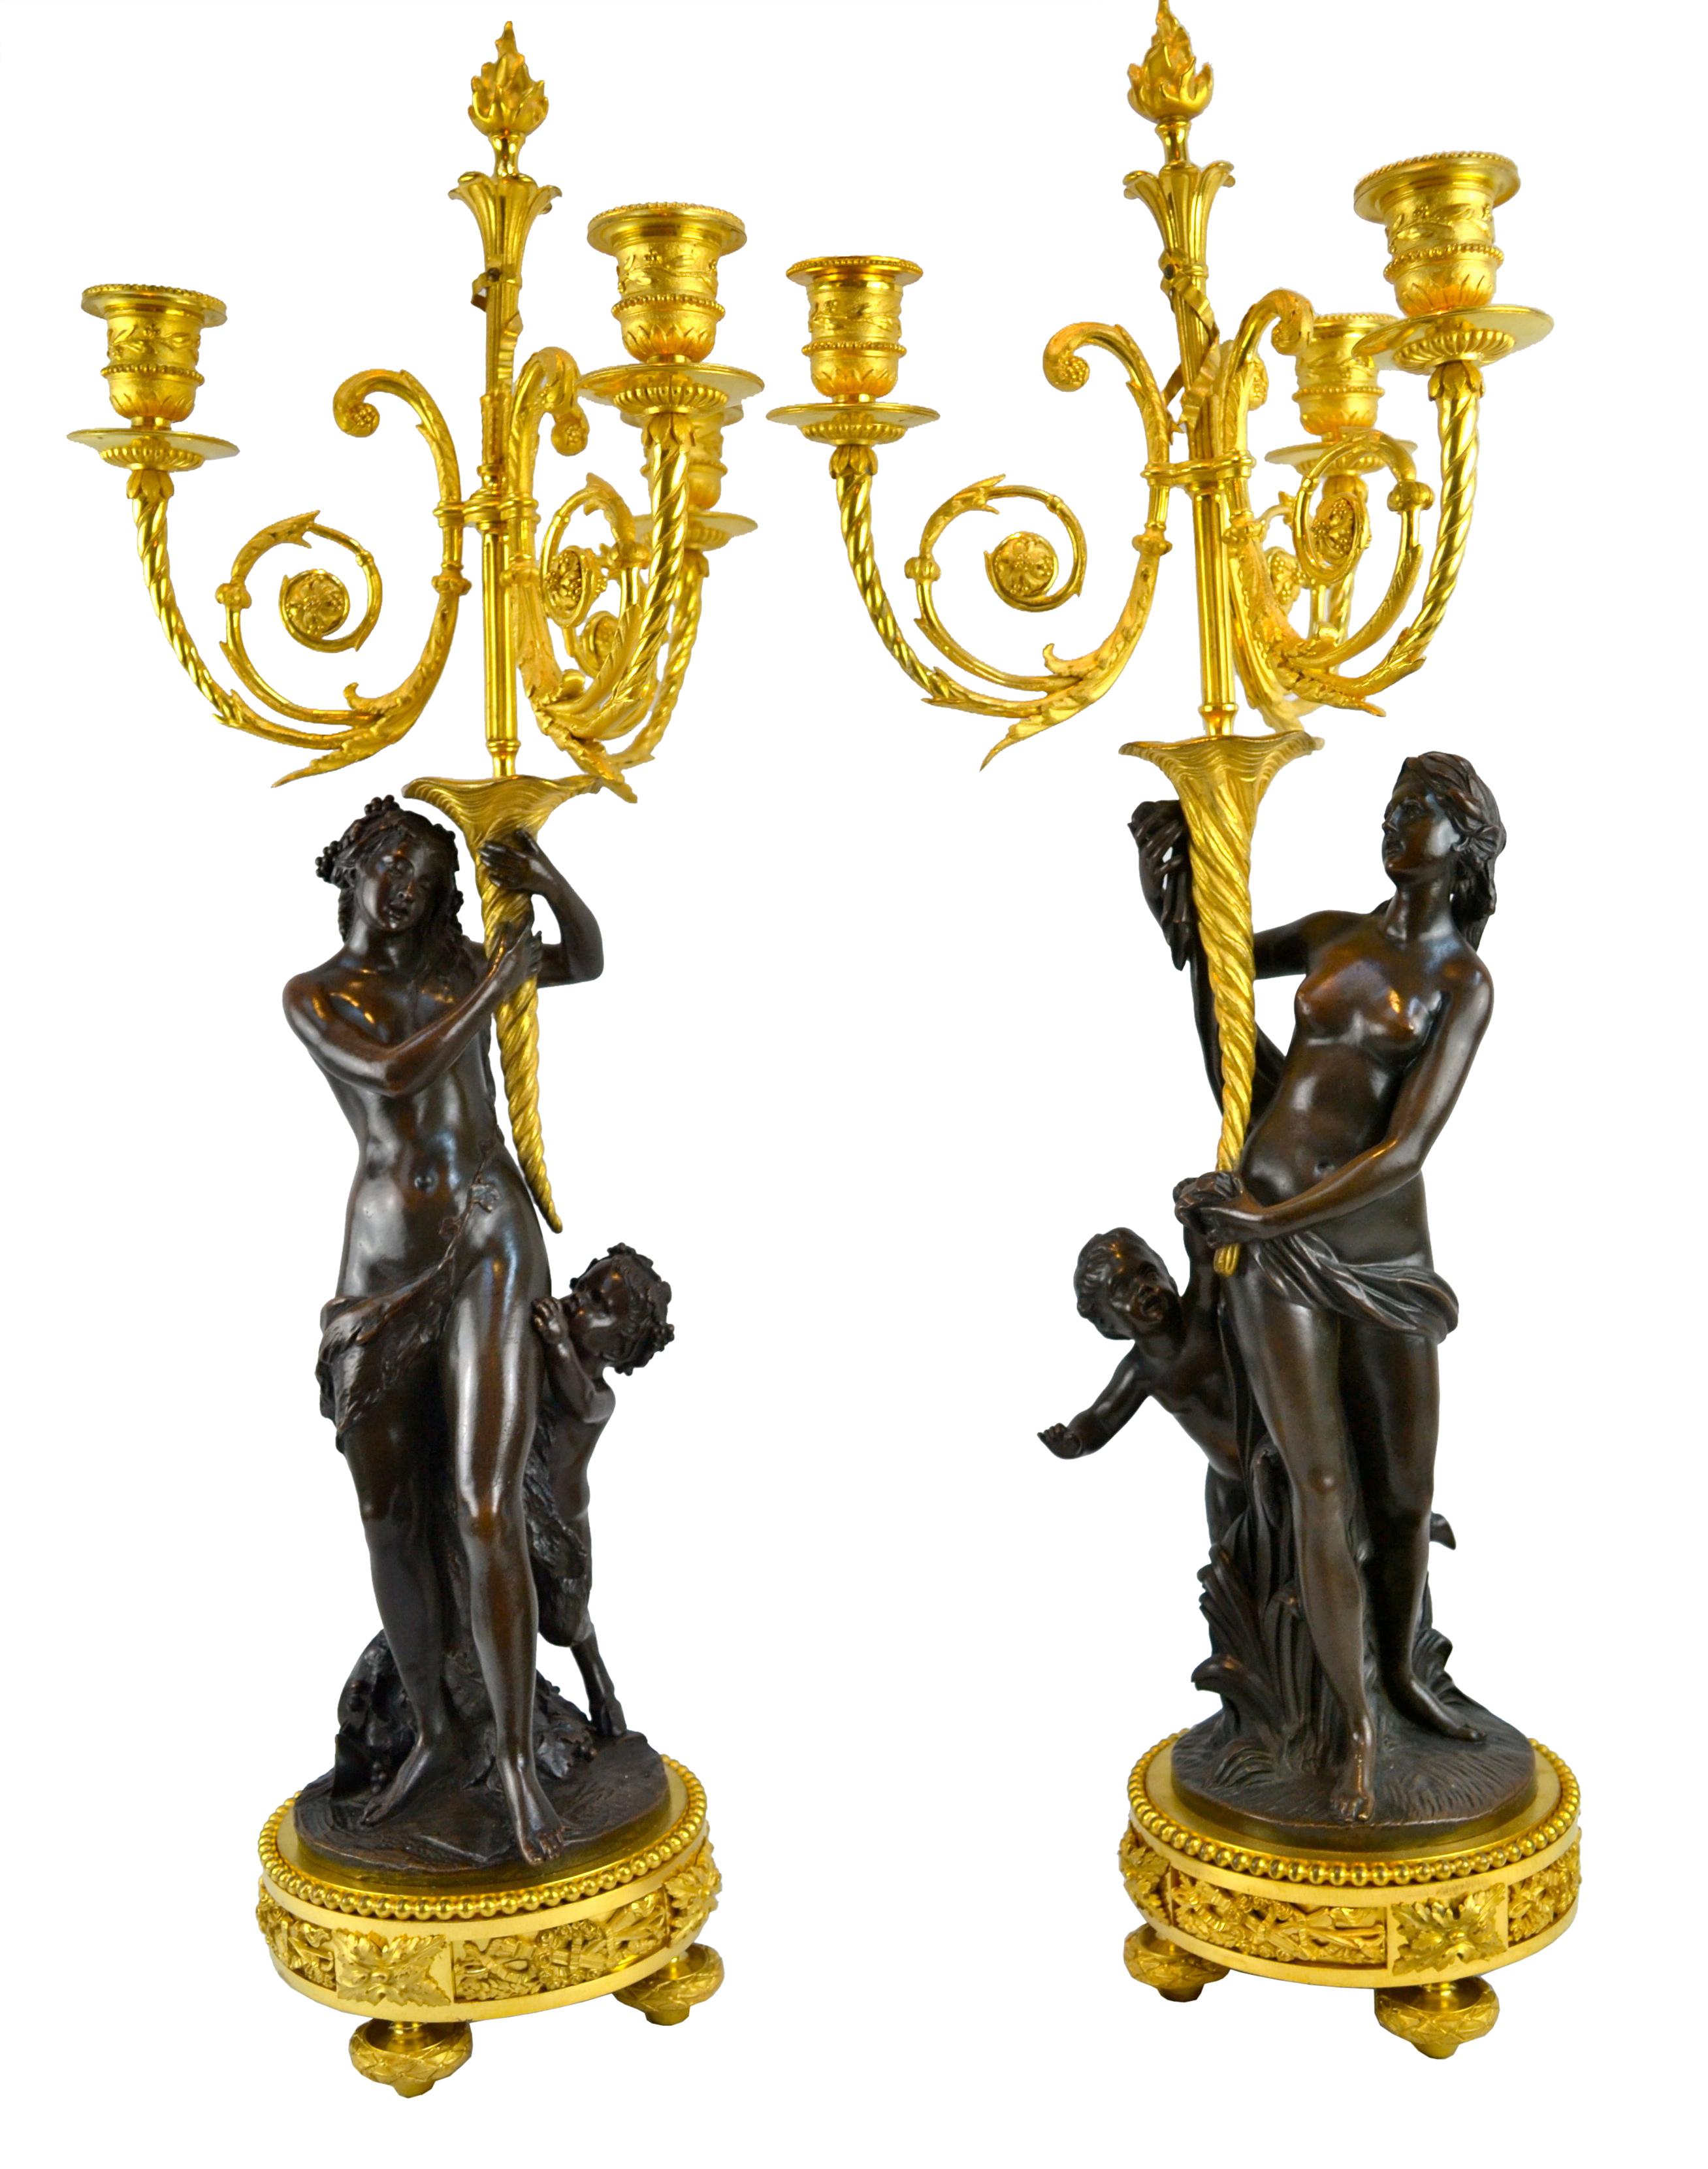 Une paire de  Candélabres figuratifs d'inspiration Clodion en bronze ciselé doré et patiné de la plus haute qualité. Chacune d'entre elles montre une jeune fille semi-nue, drapée de façon classique, debout, avec un satyre infantile aux sabots,